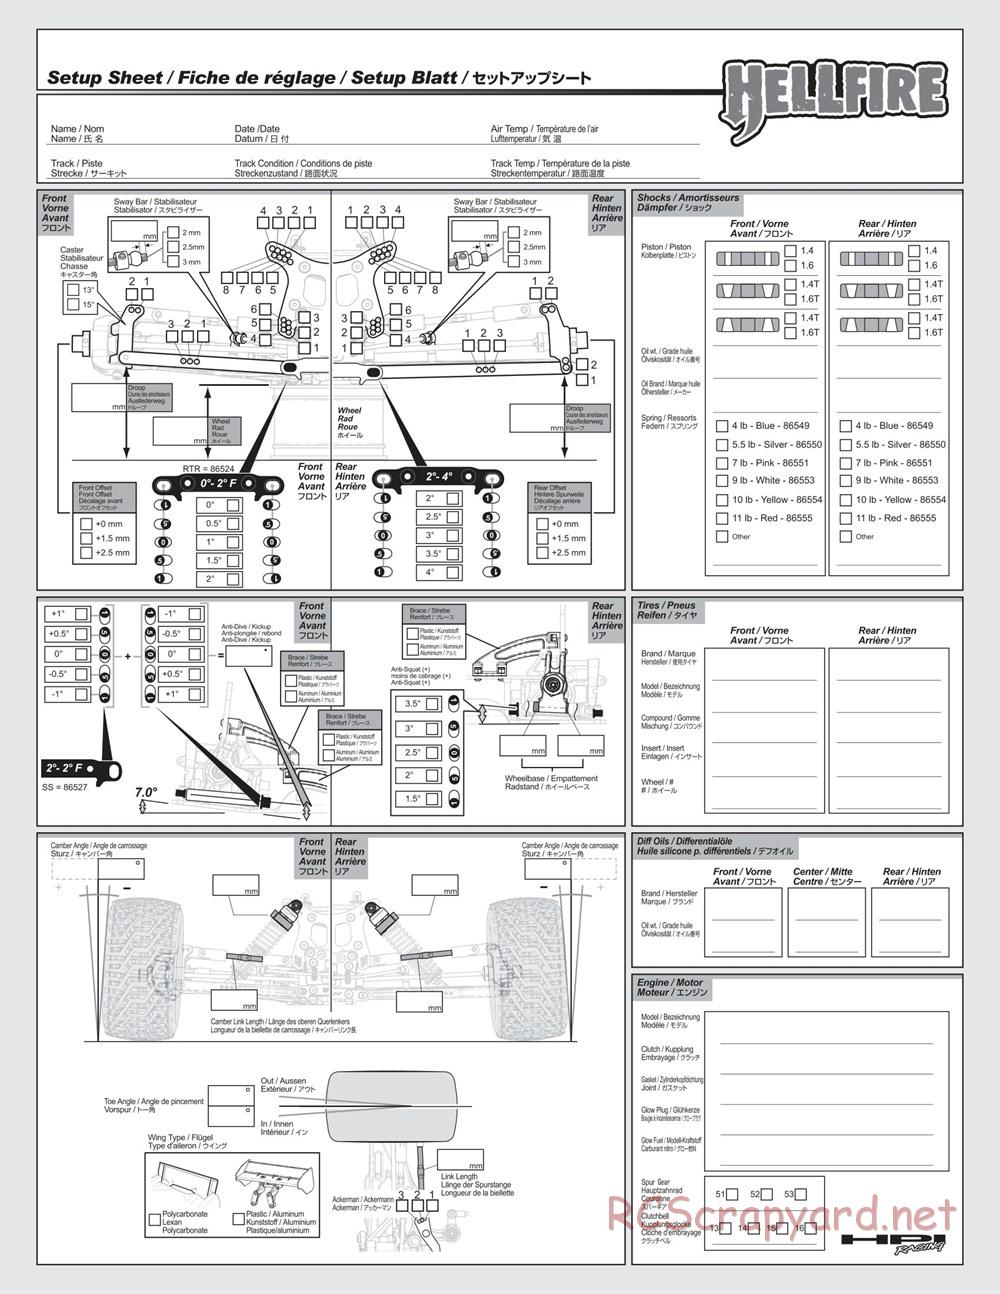 HPI - Hellfire SS - Manual - Page 59